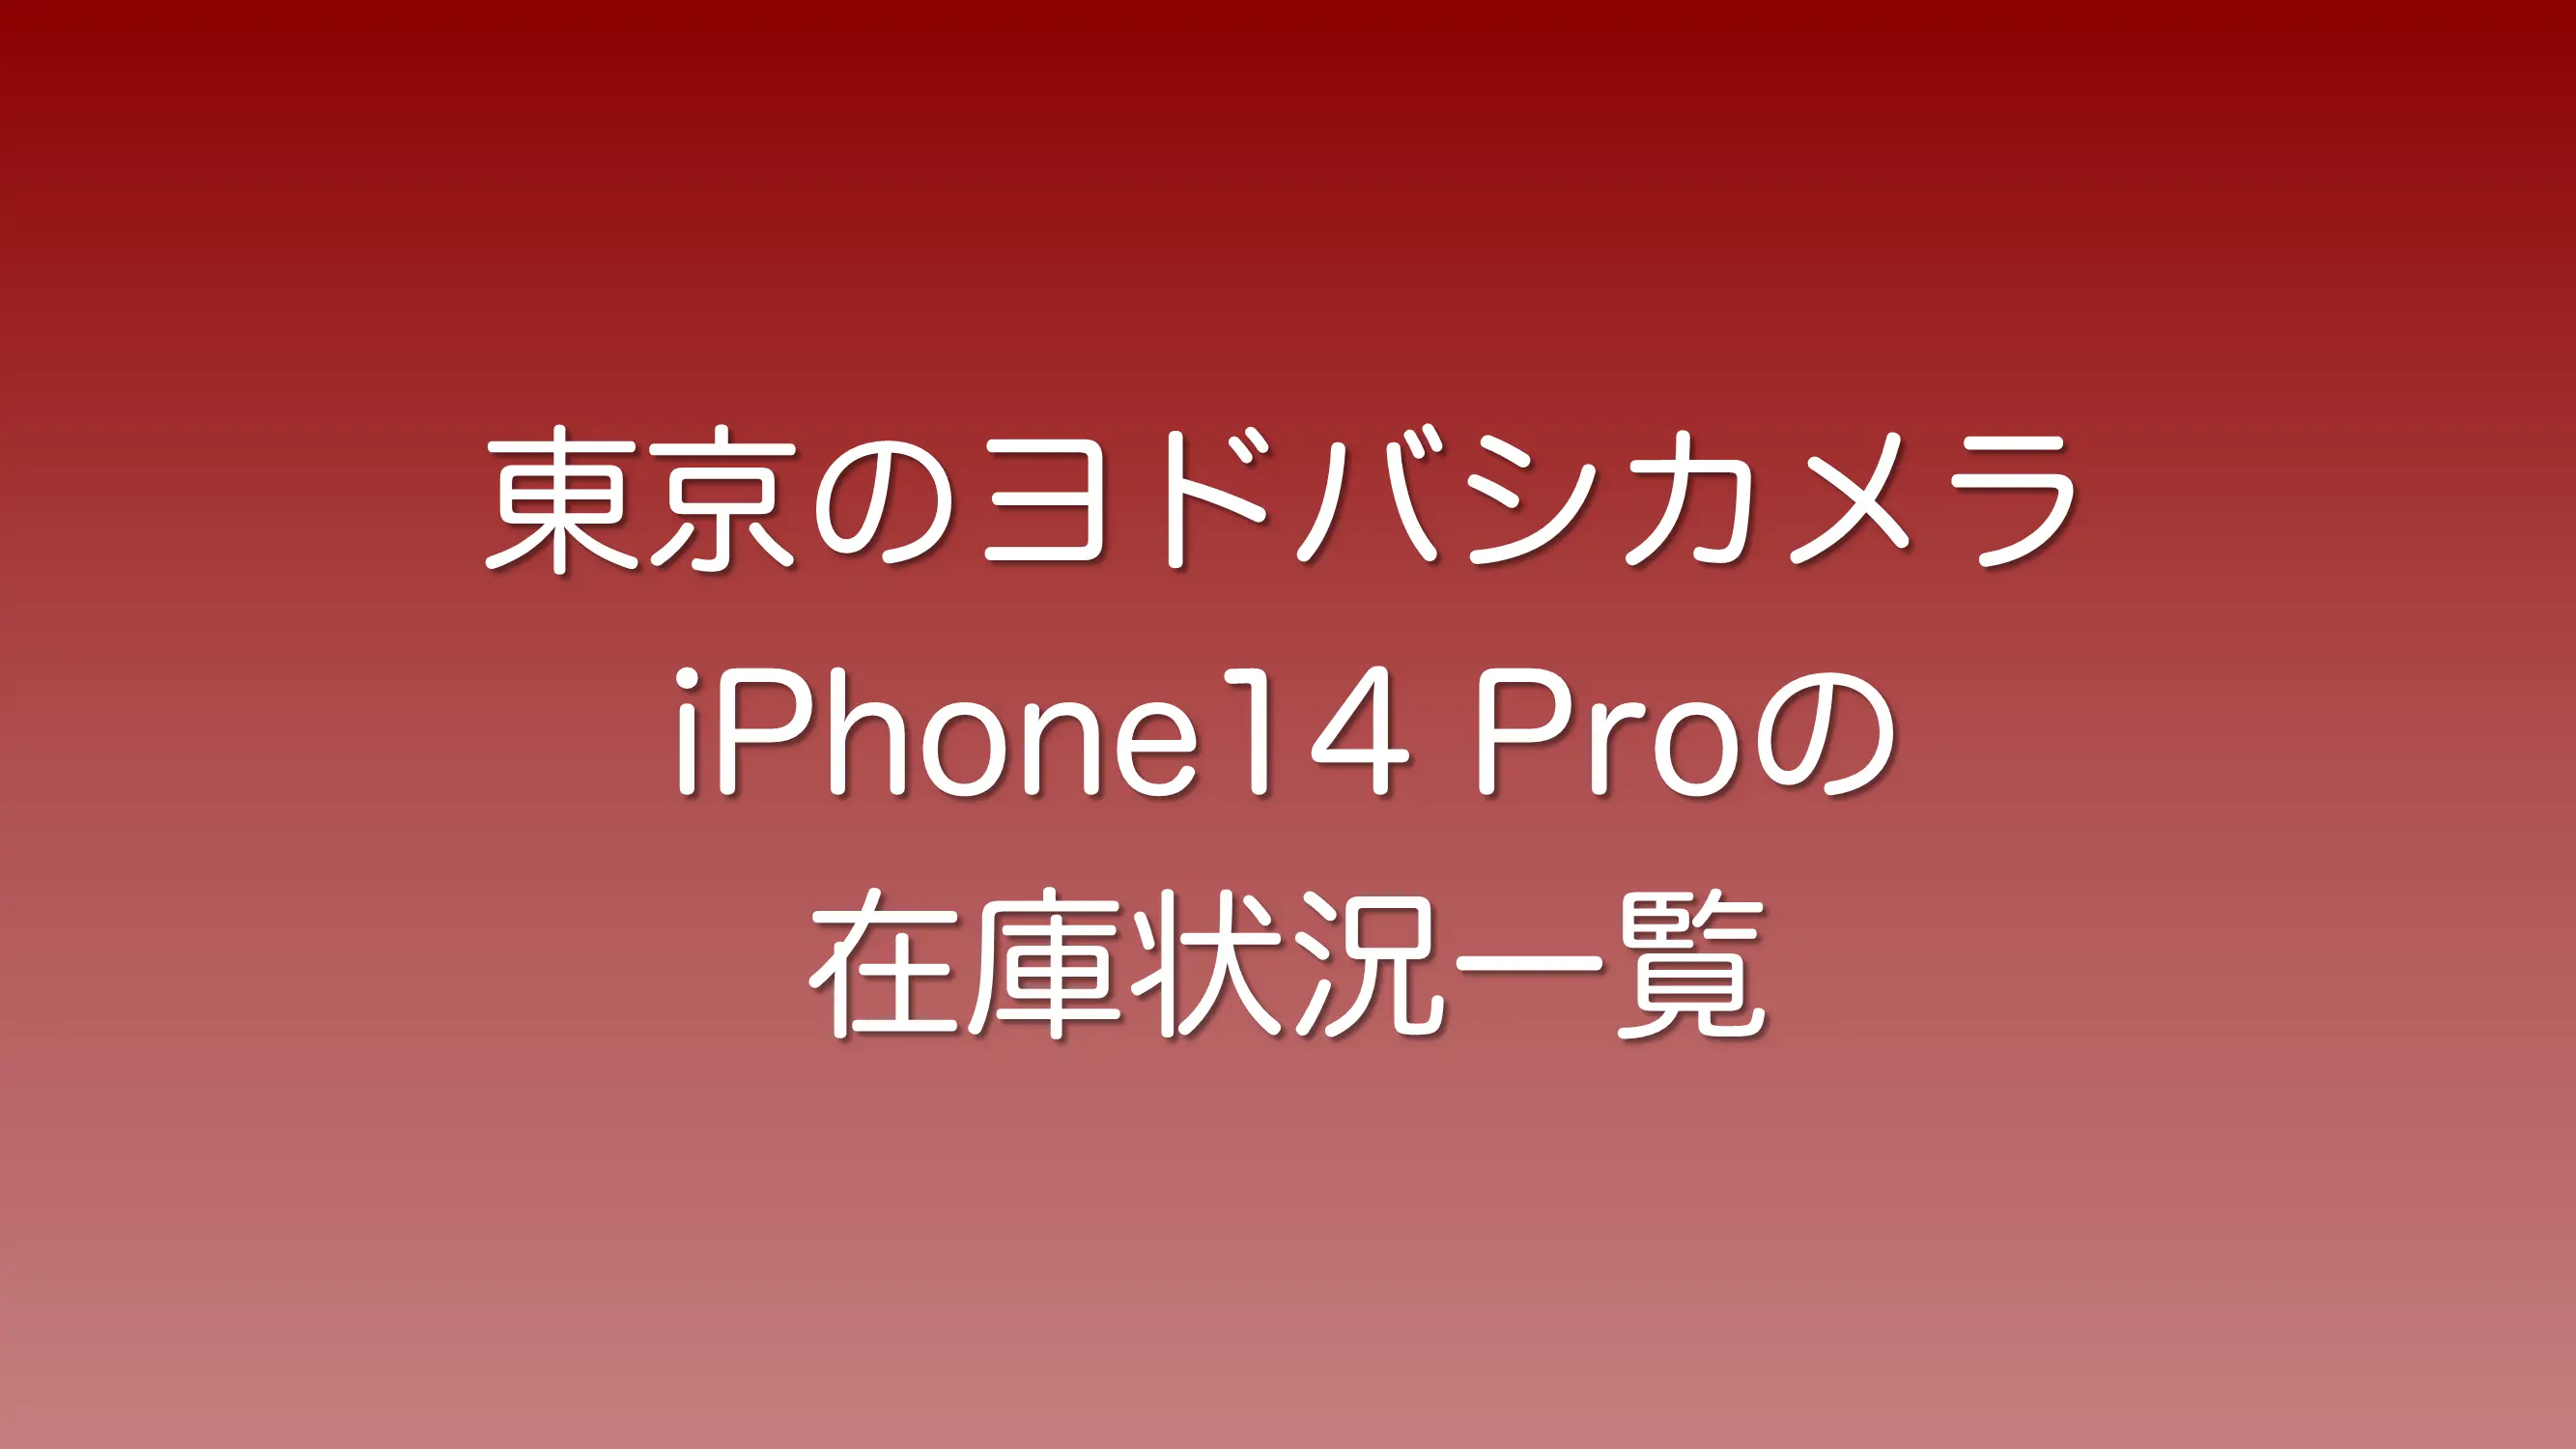 東京のヨドバシカメラでiPhone14 Proの在庫のある店の一覧